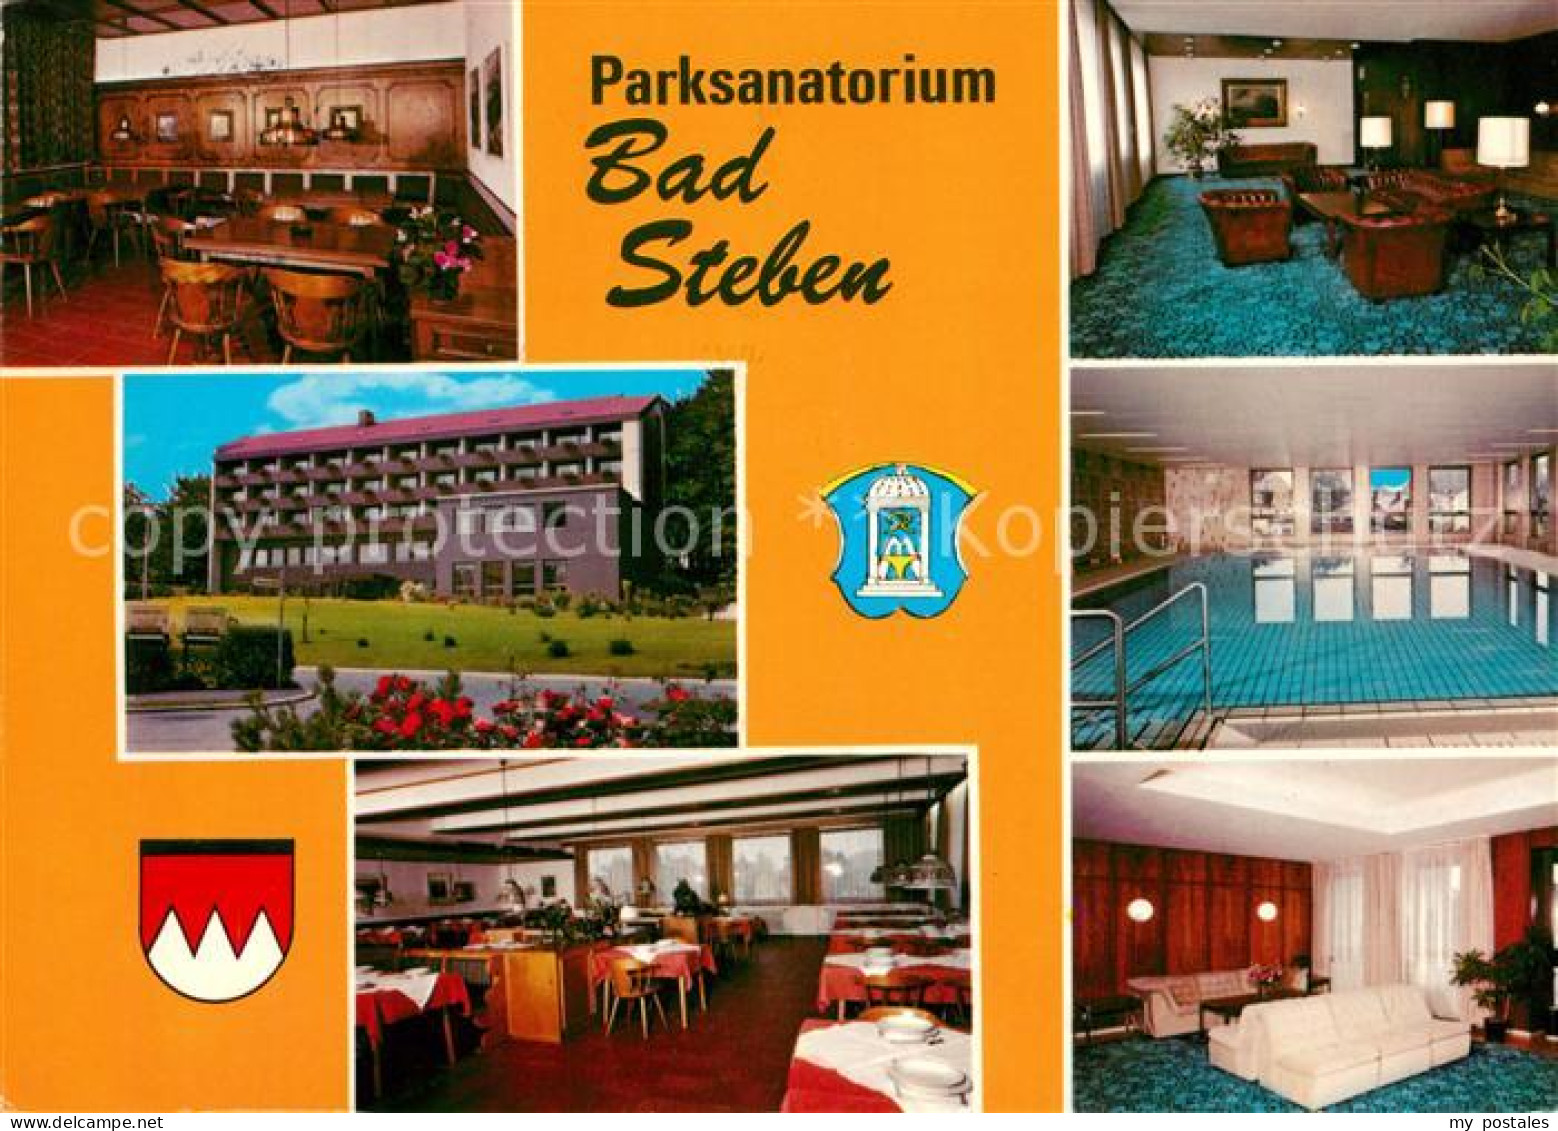 73159292 Bad Steben Parksanatorium Restaurant Aufenthaltsraum Hallenbad Speisesa - Bad Steben